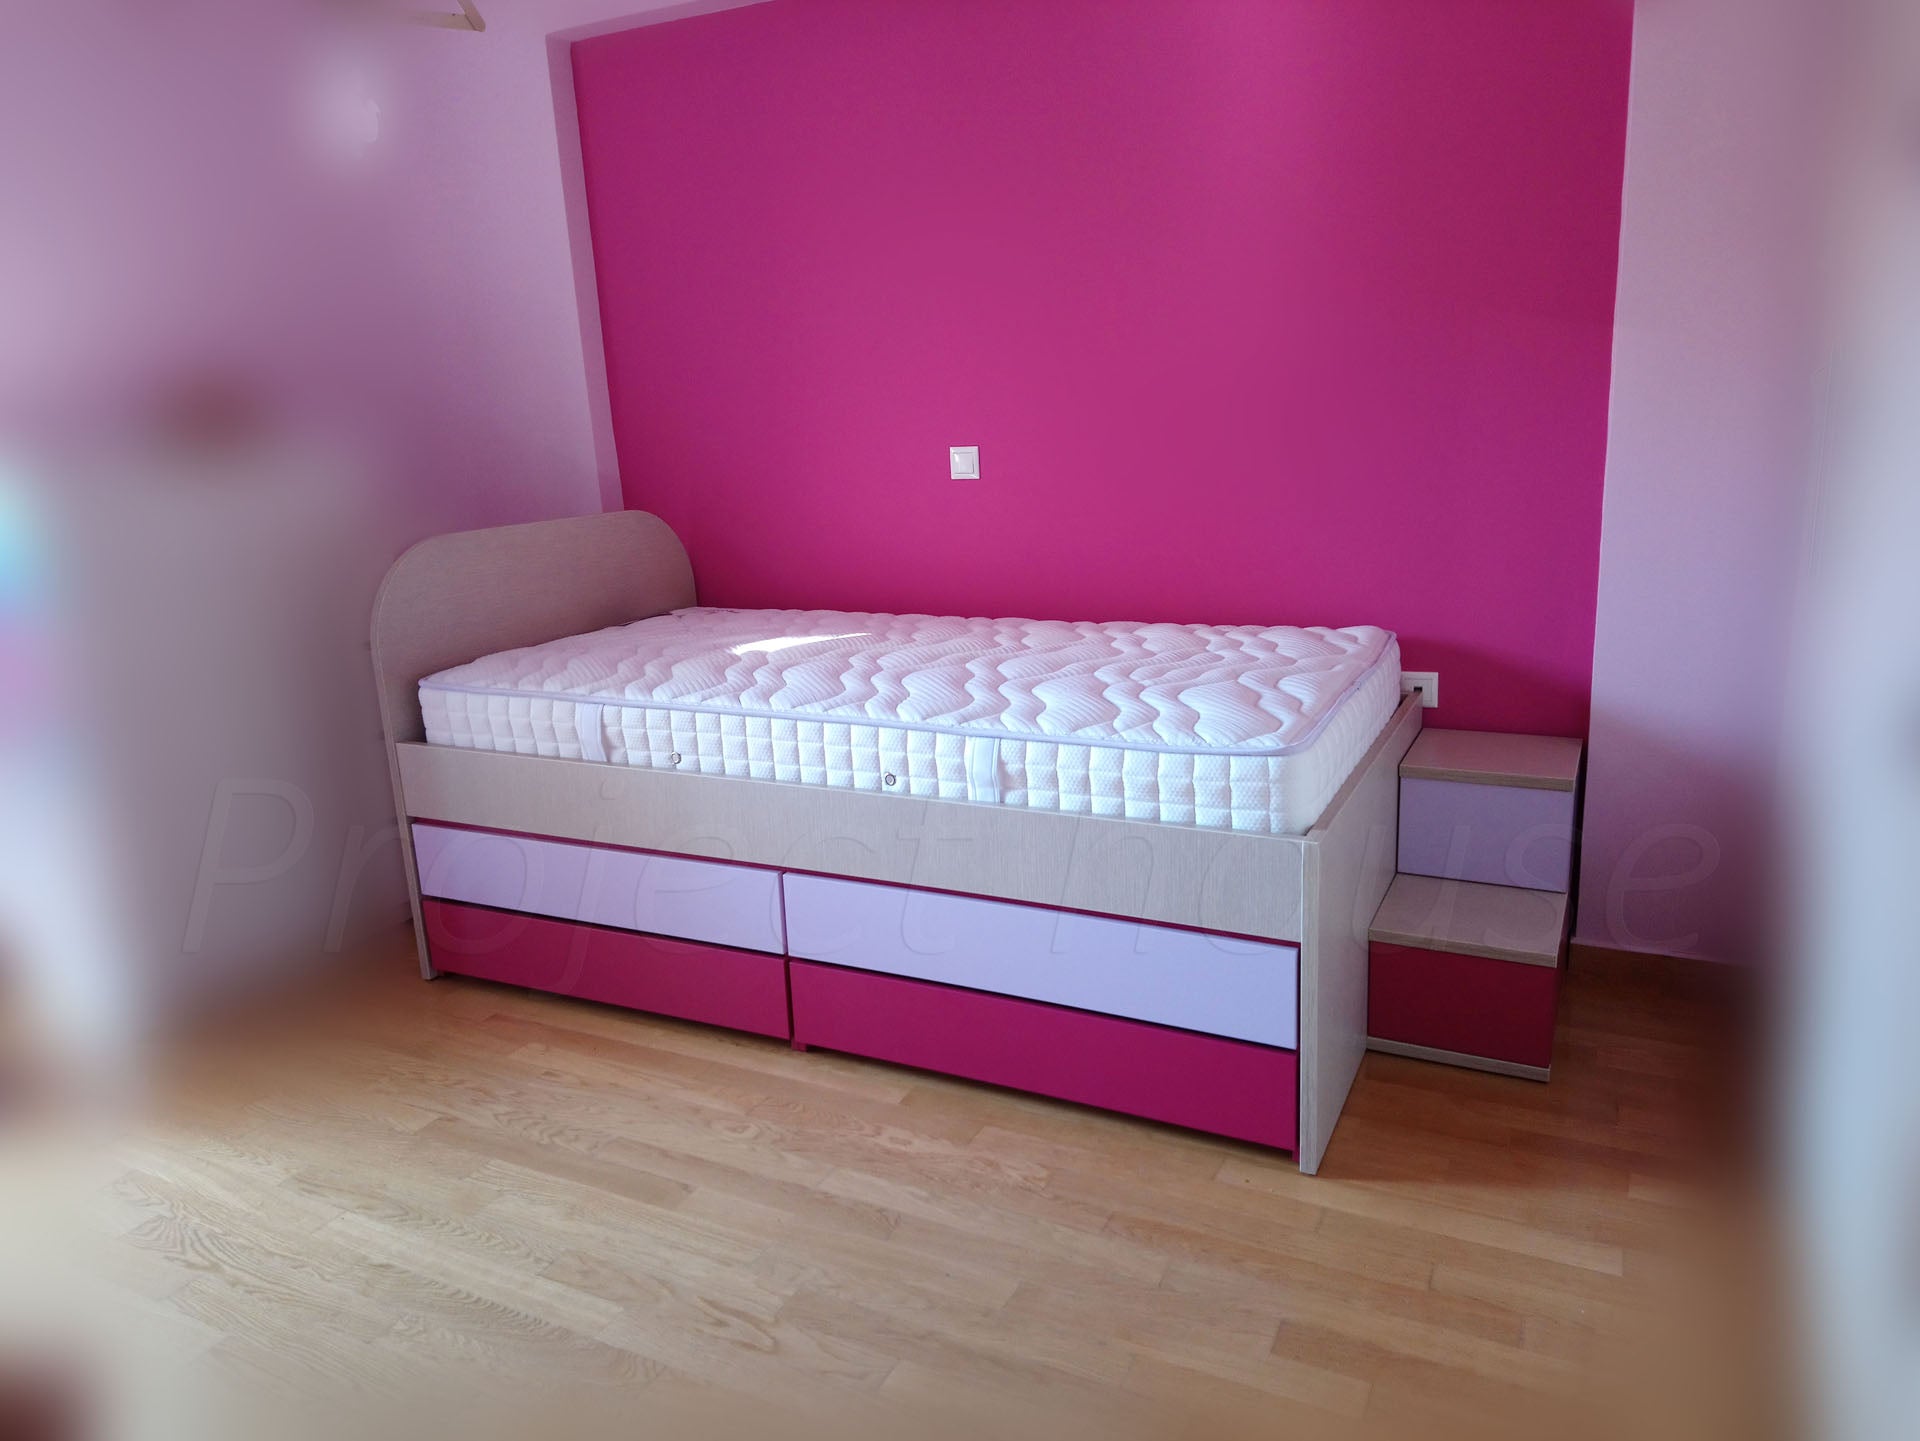 Κοριτσίστικο κρεβάτι με συρτάρια και σκαλίτσα